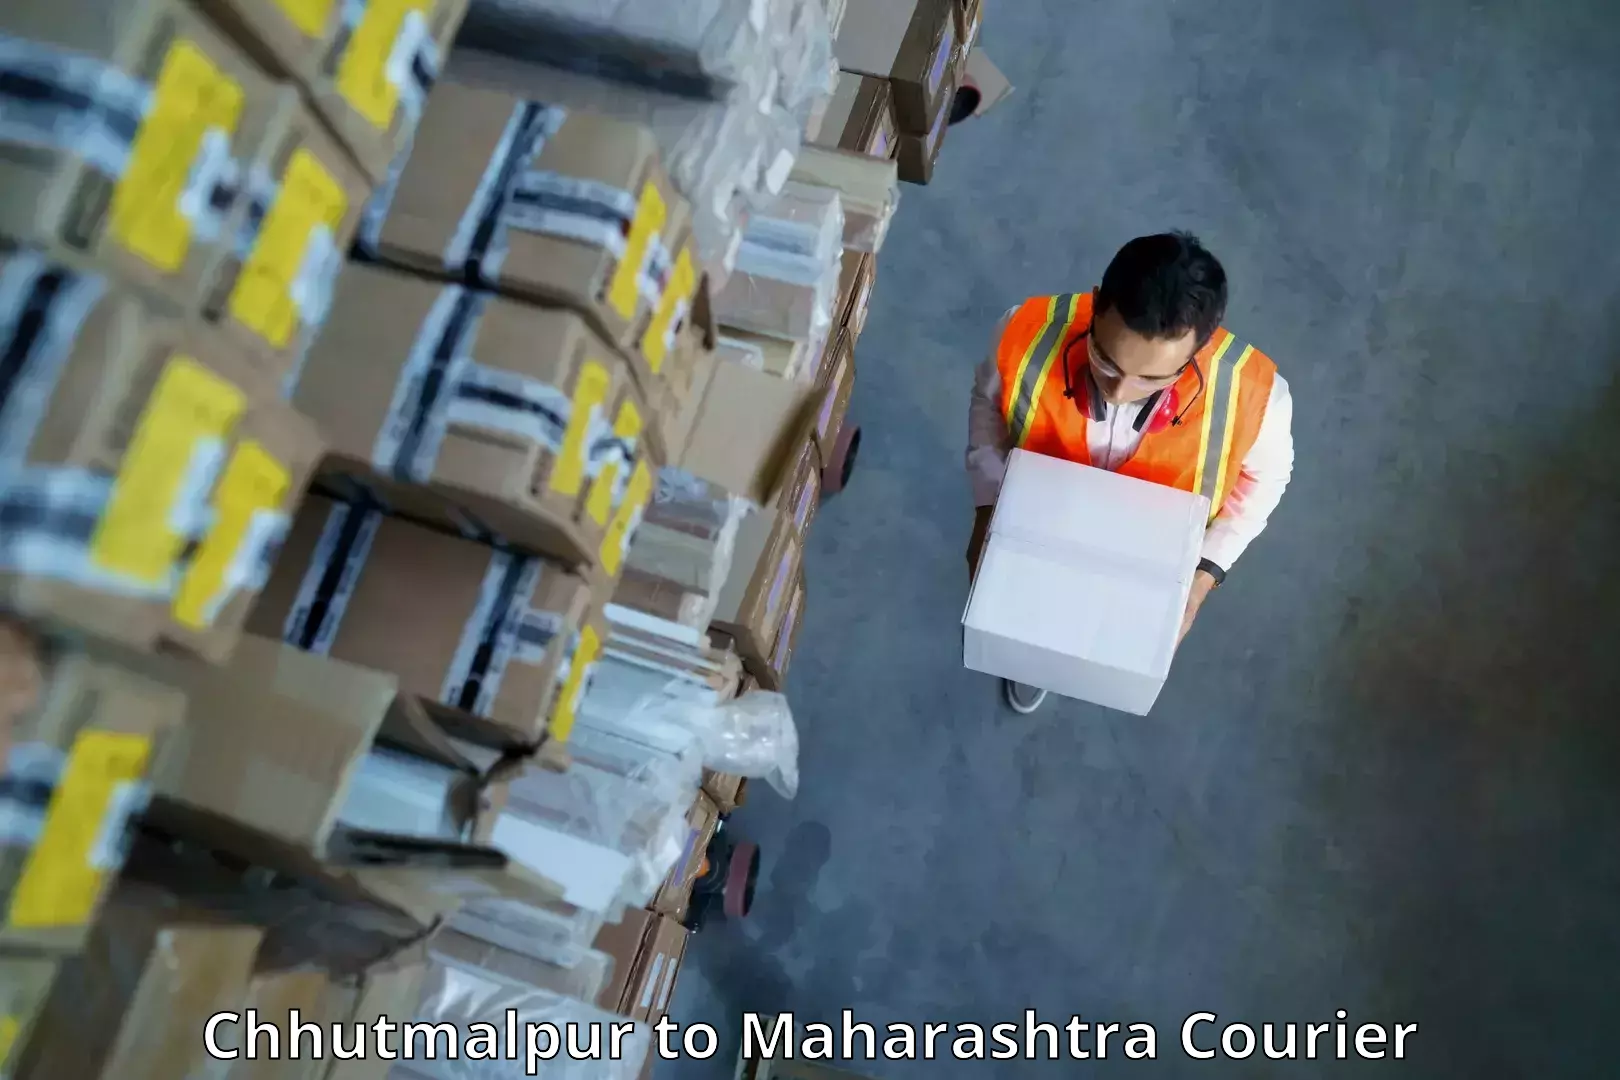 Efficient cargo handling Chhutmalpur to Mahabaleshwar